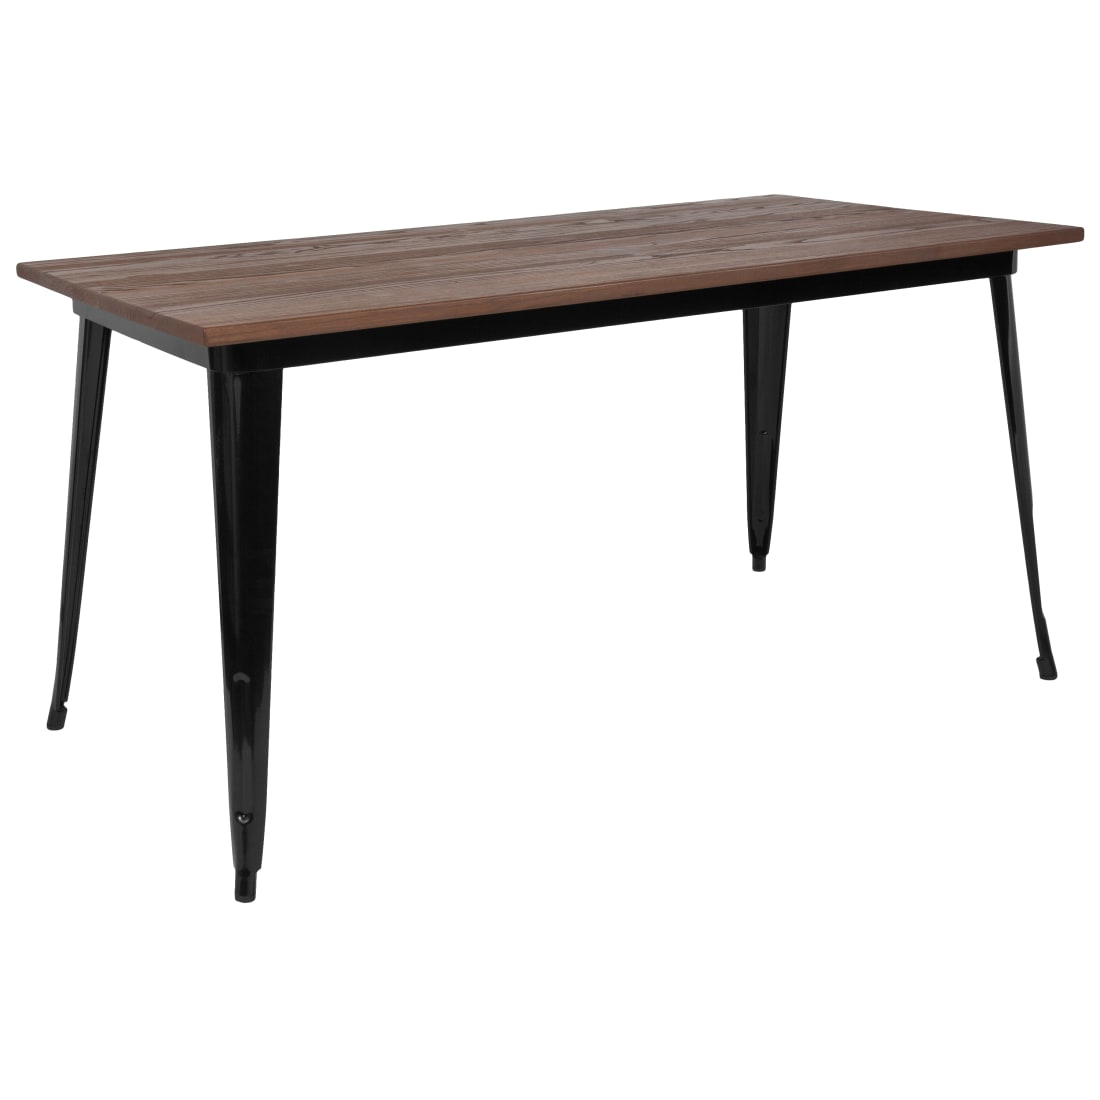 30.25” x 60” Rectangular Black Metal Indoor Table with Walnut Rustic Wood Top